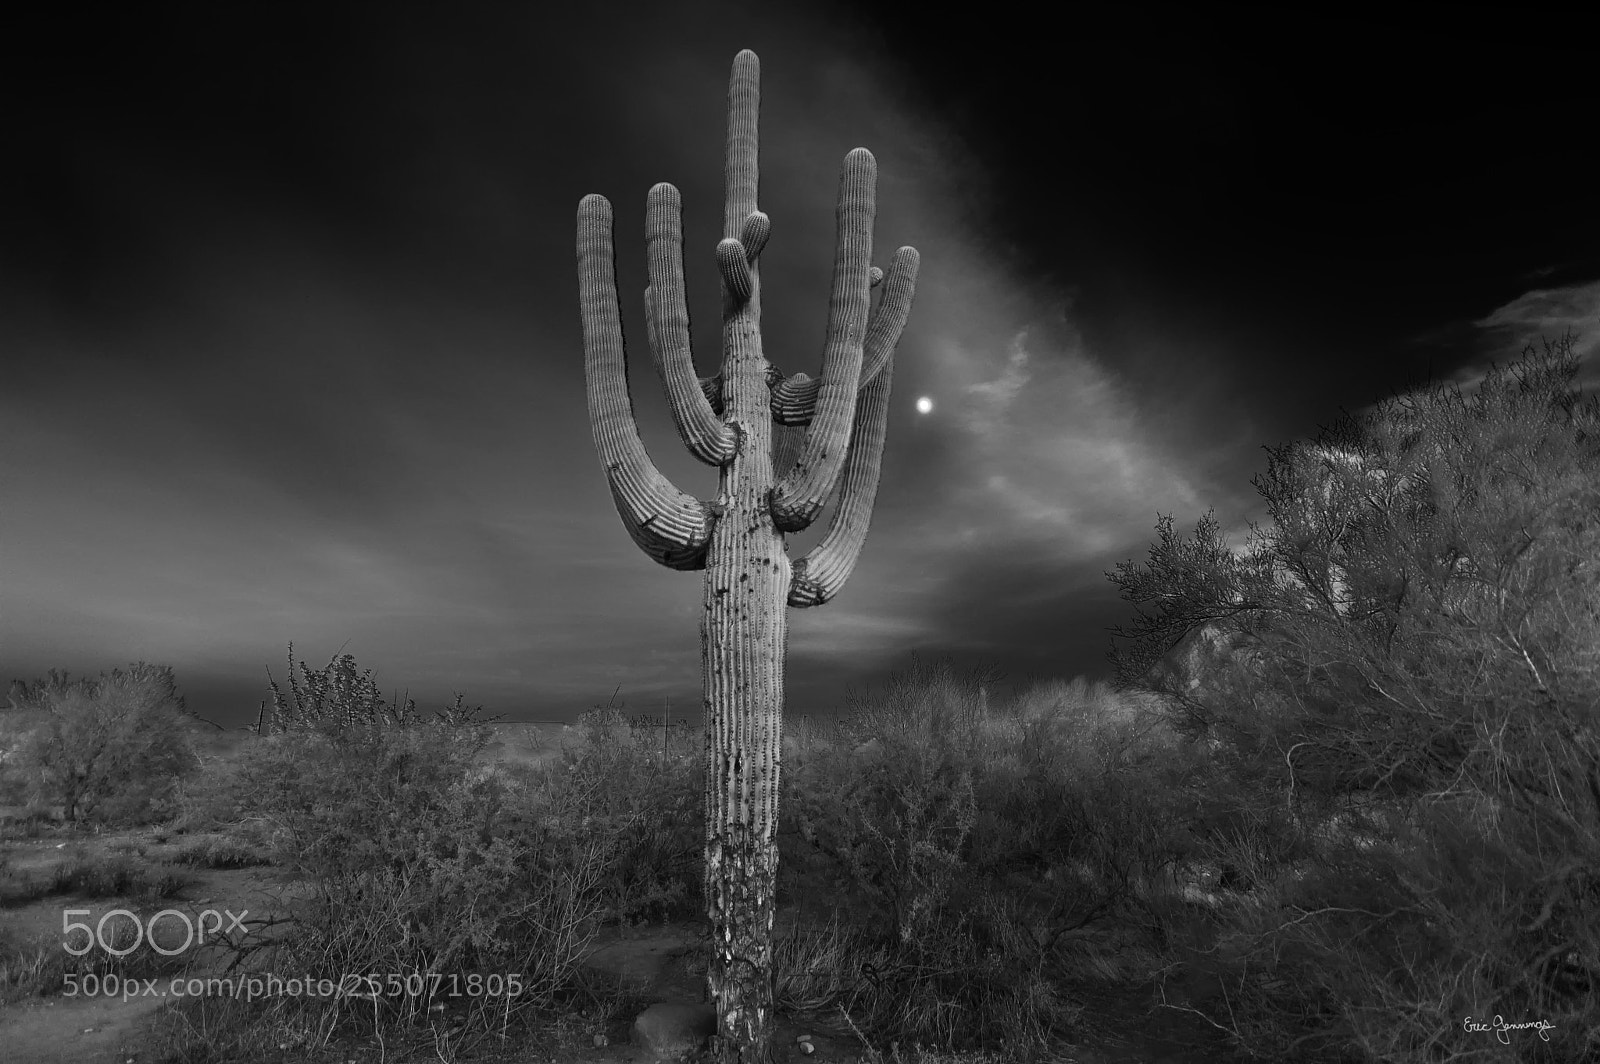 Nikon D50 sample photo. Night cactus photography